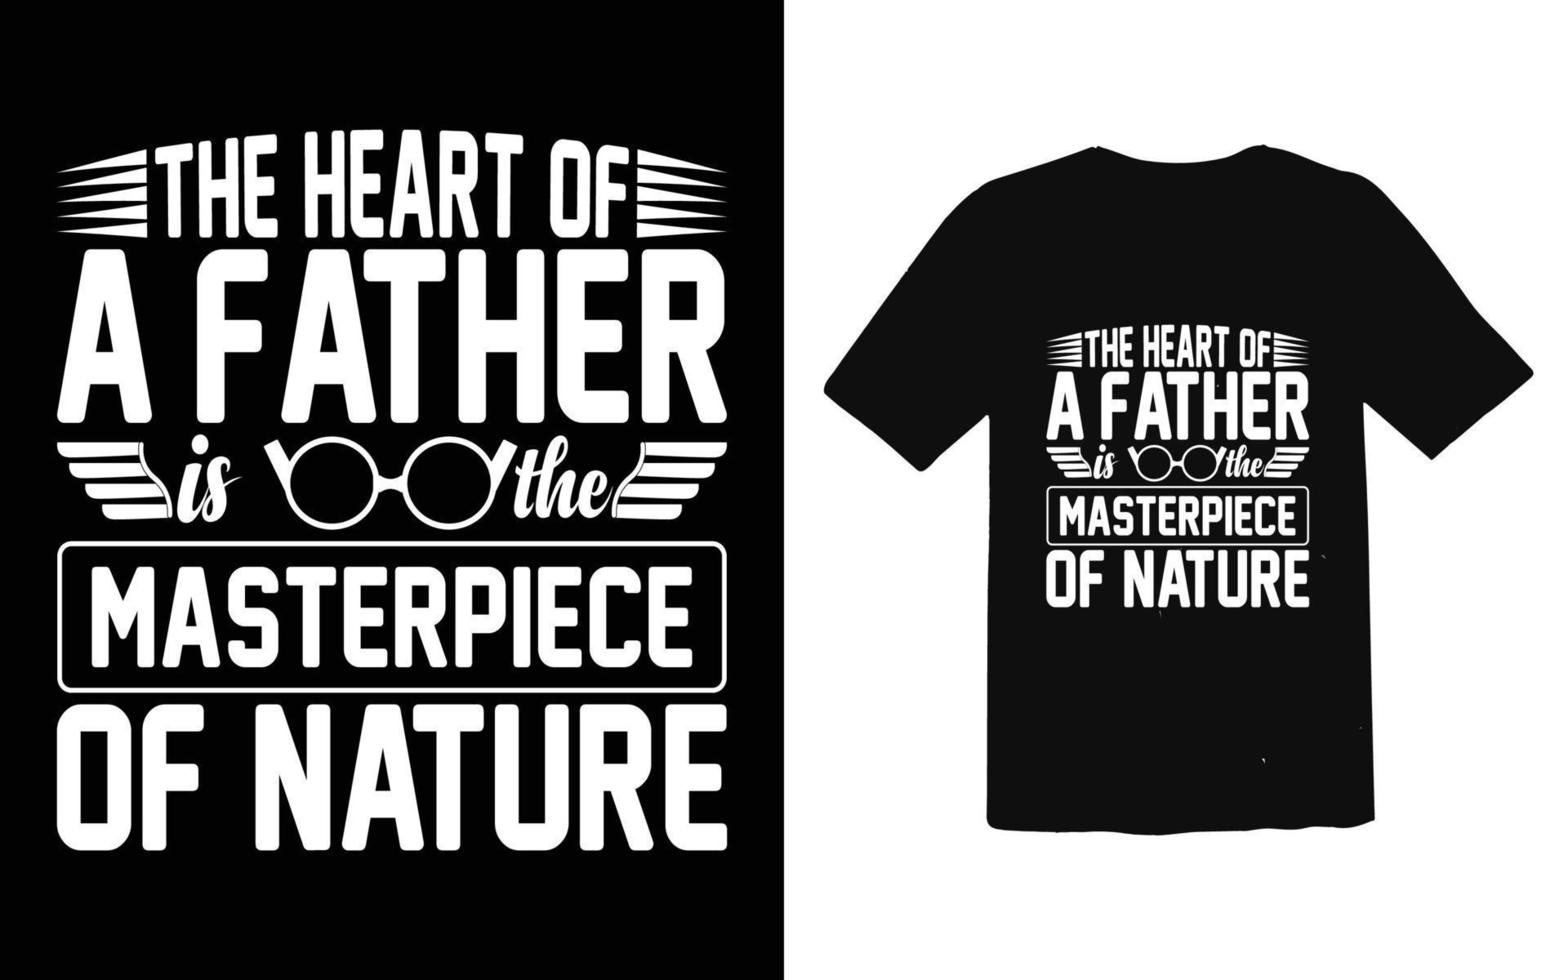 vaderdag typografische t-shirt ontwerp vector, trendy vader t-shirt ontwerp vector